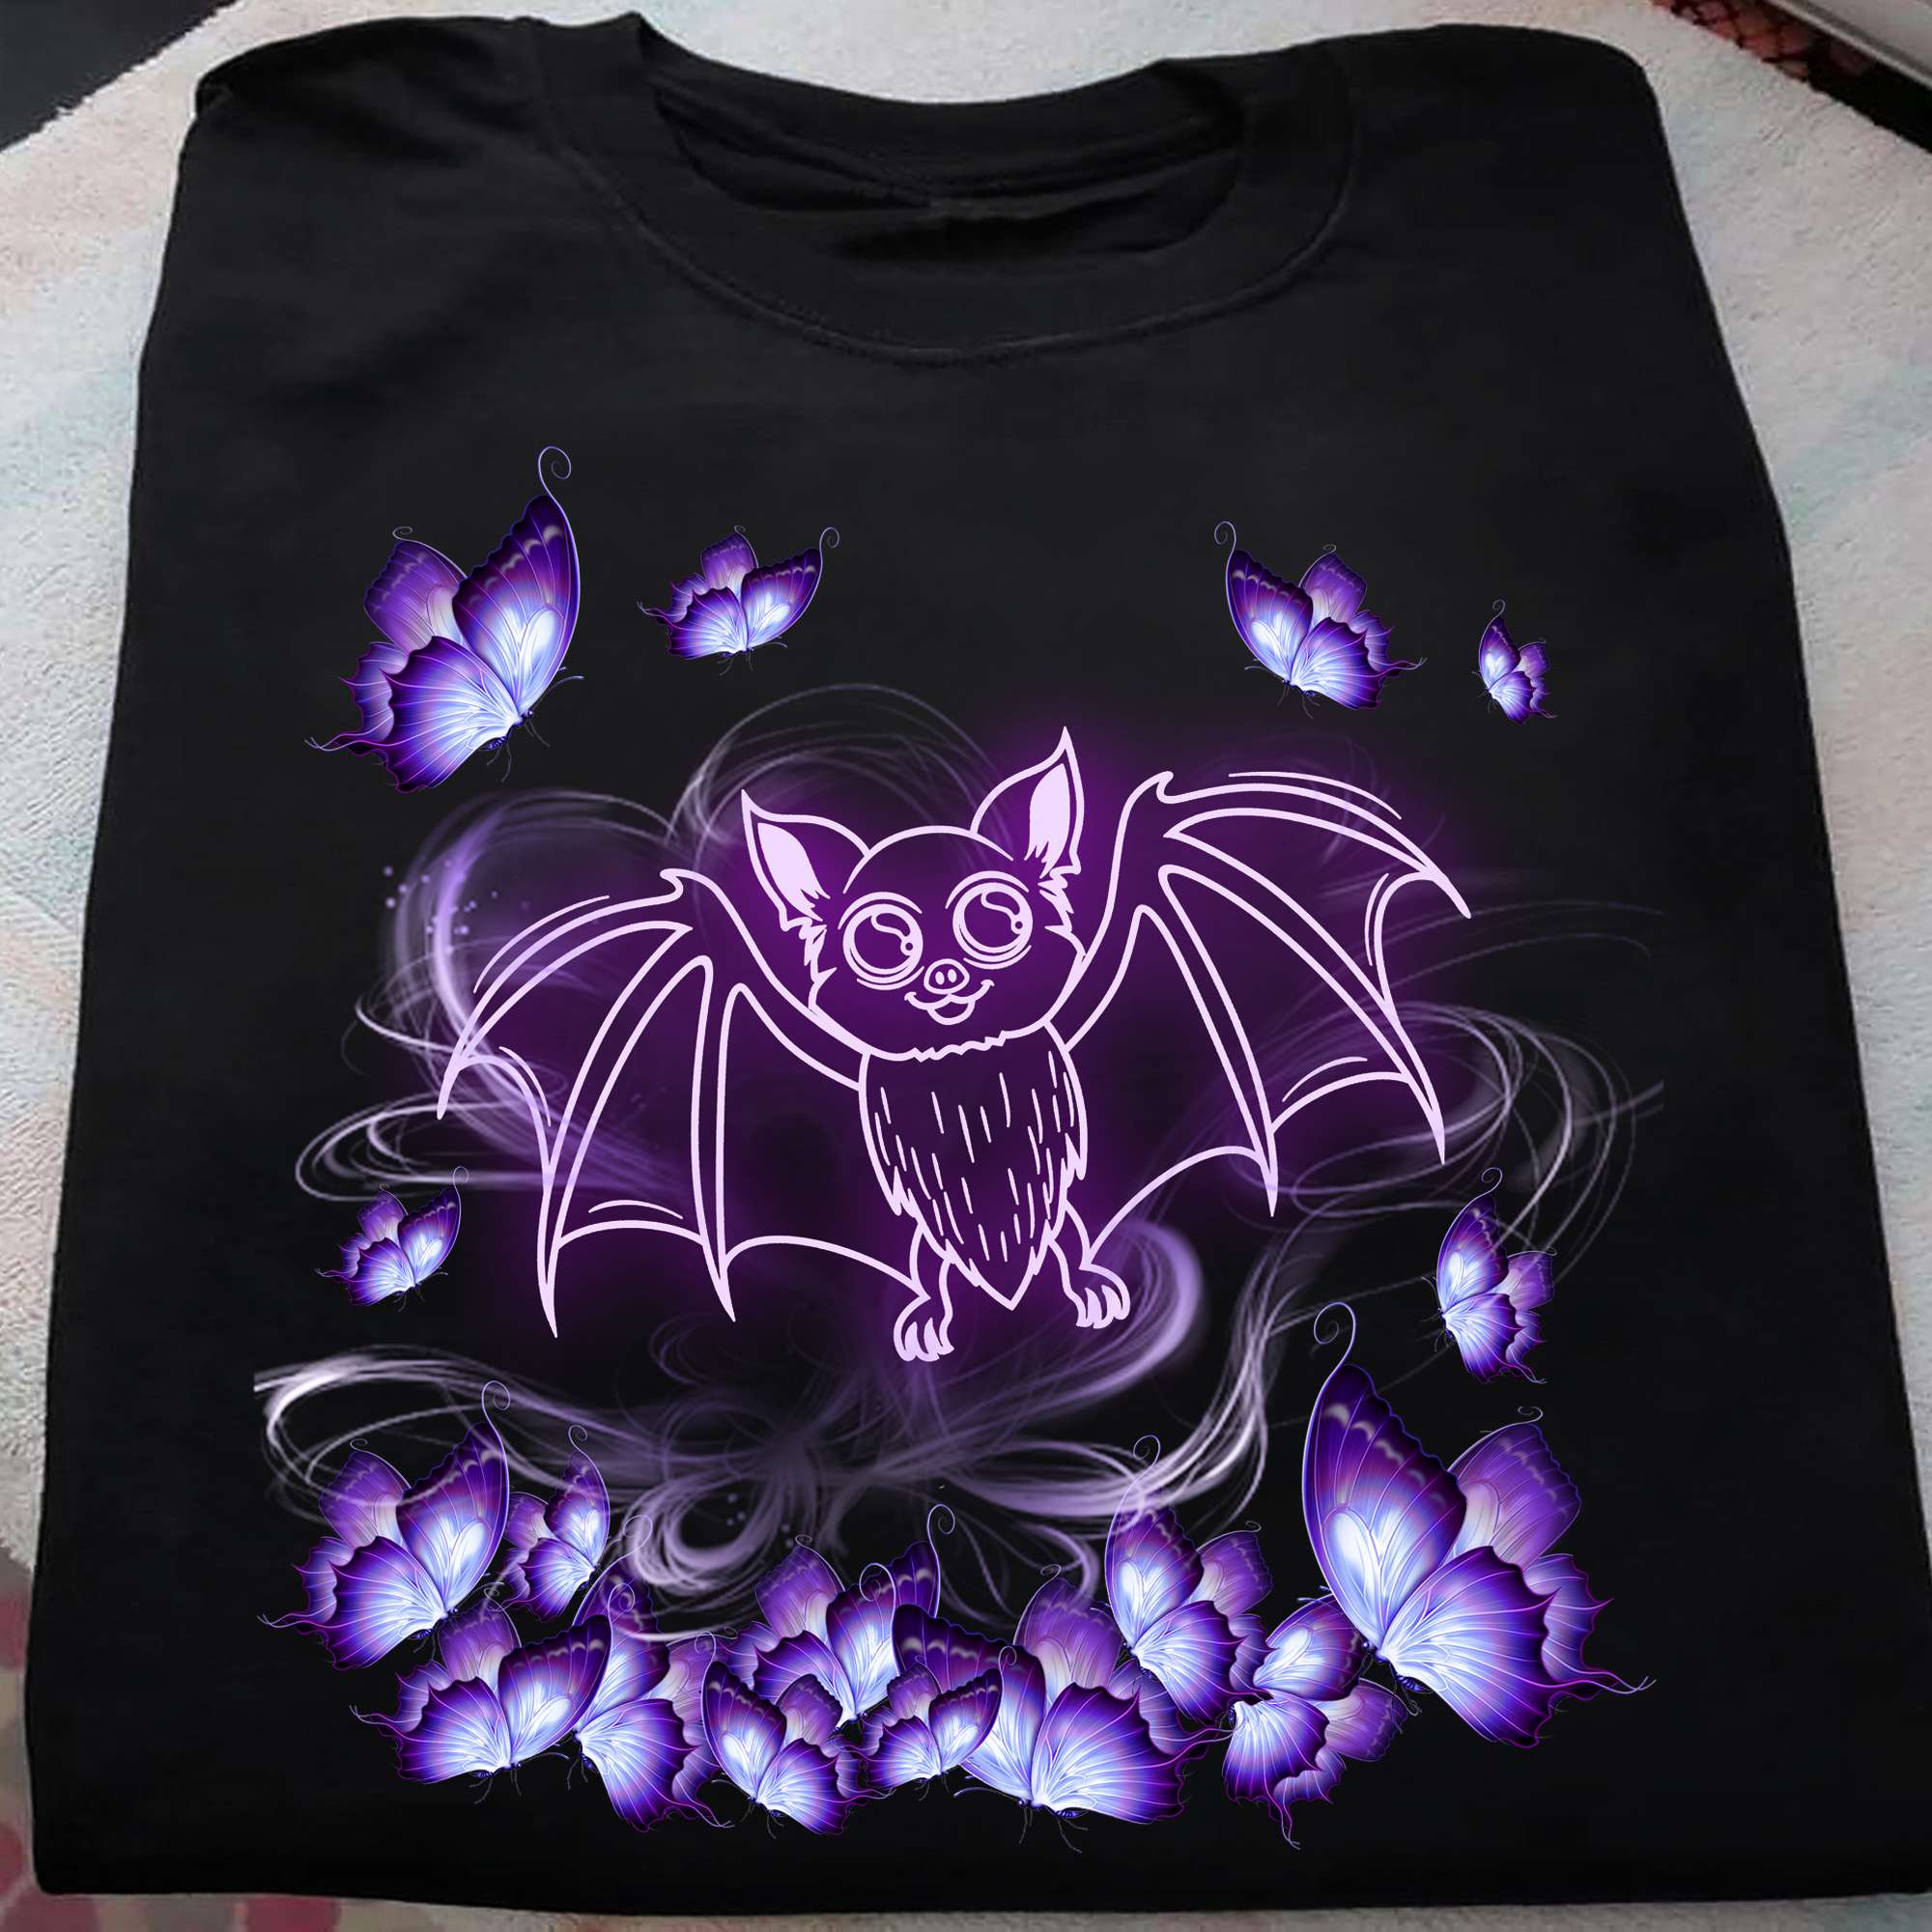 Lovable Bat - Purple bat, purple butterfly